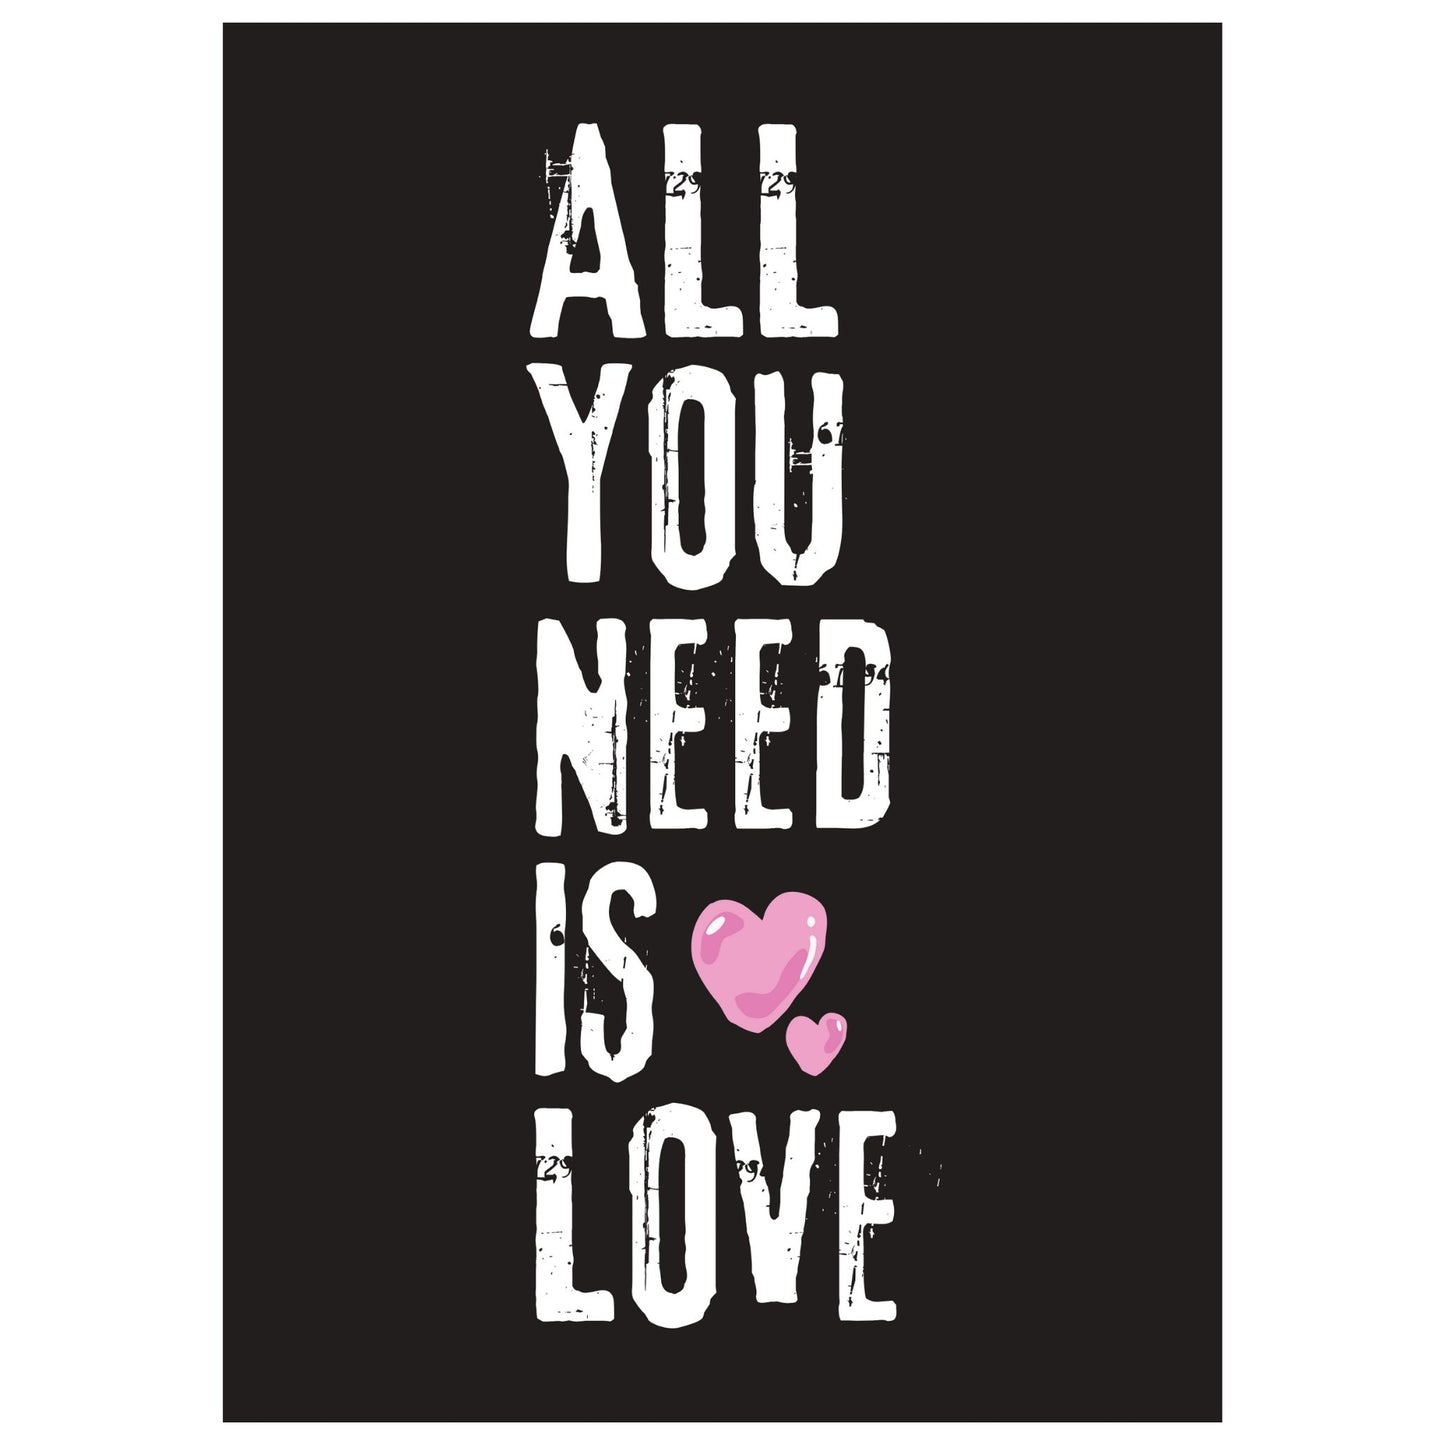 ALL YOU NEED IS LOVE - grafisk tekstplakat med hvit tekst på sort bakgrunn, og to rosa hjerter.